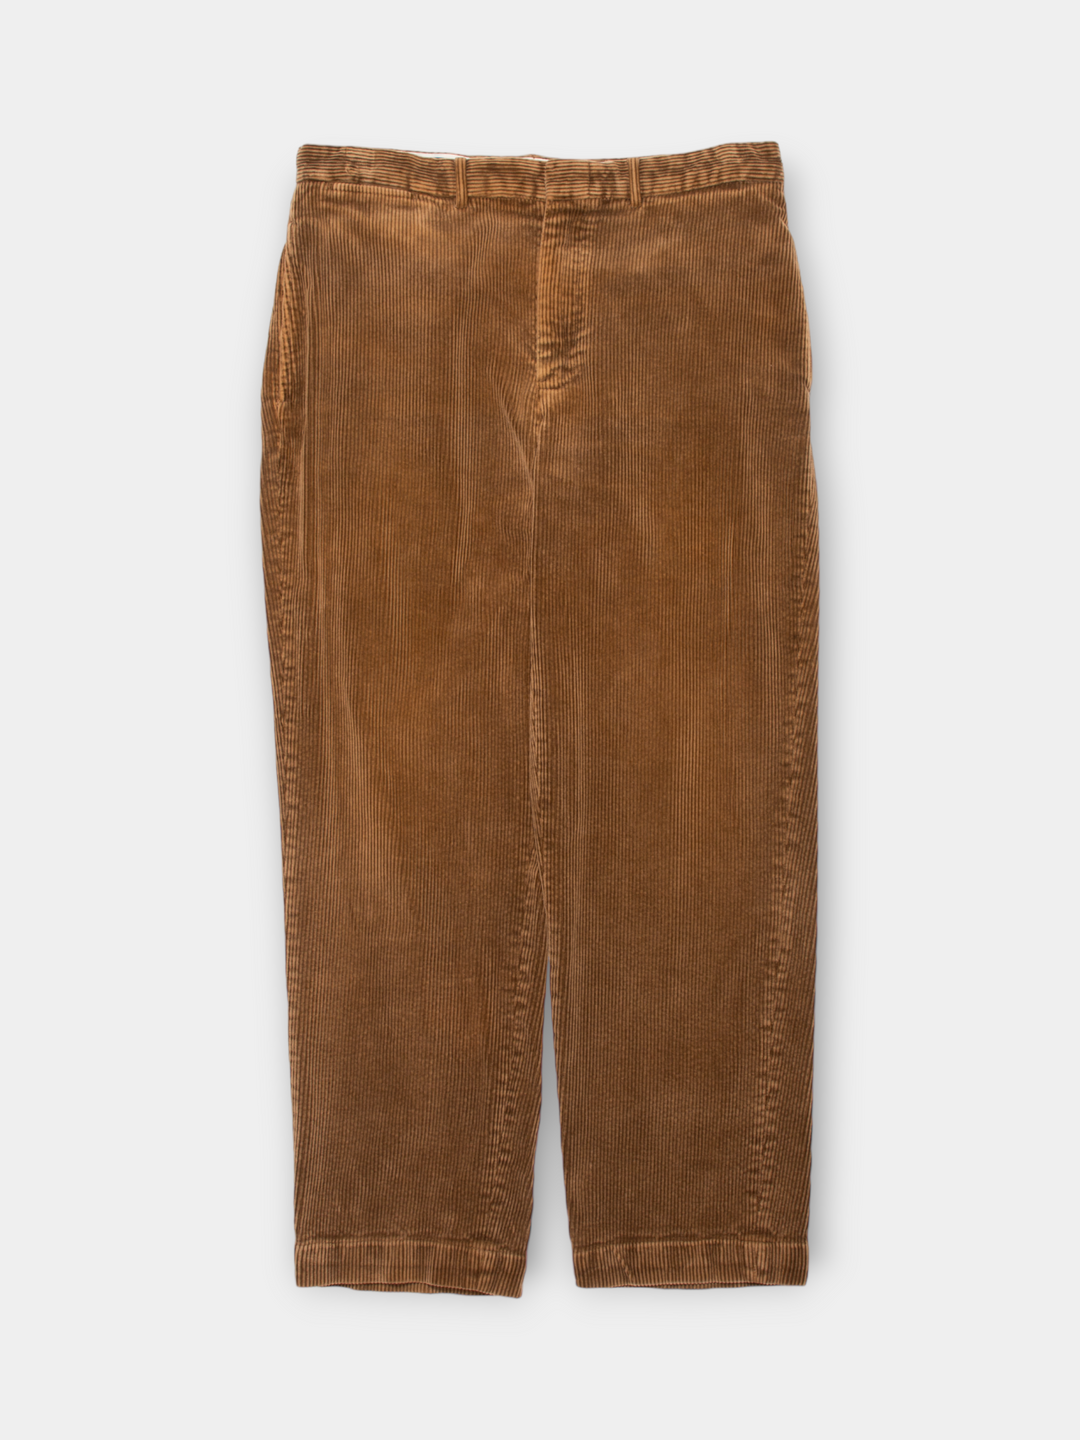 90s Ralph Lauren Corduroy Pants (34")